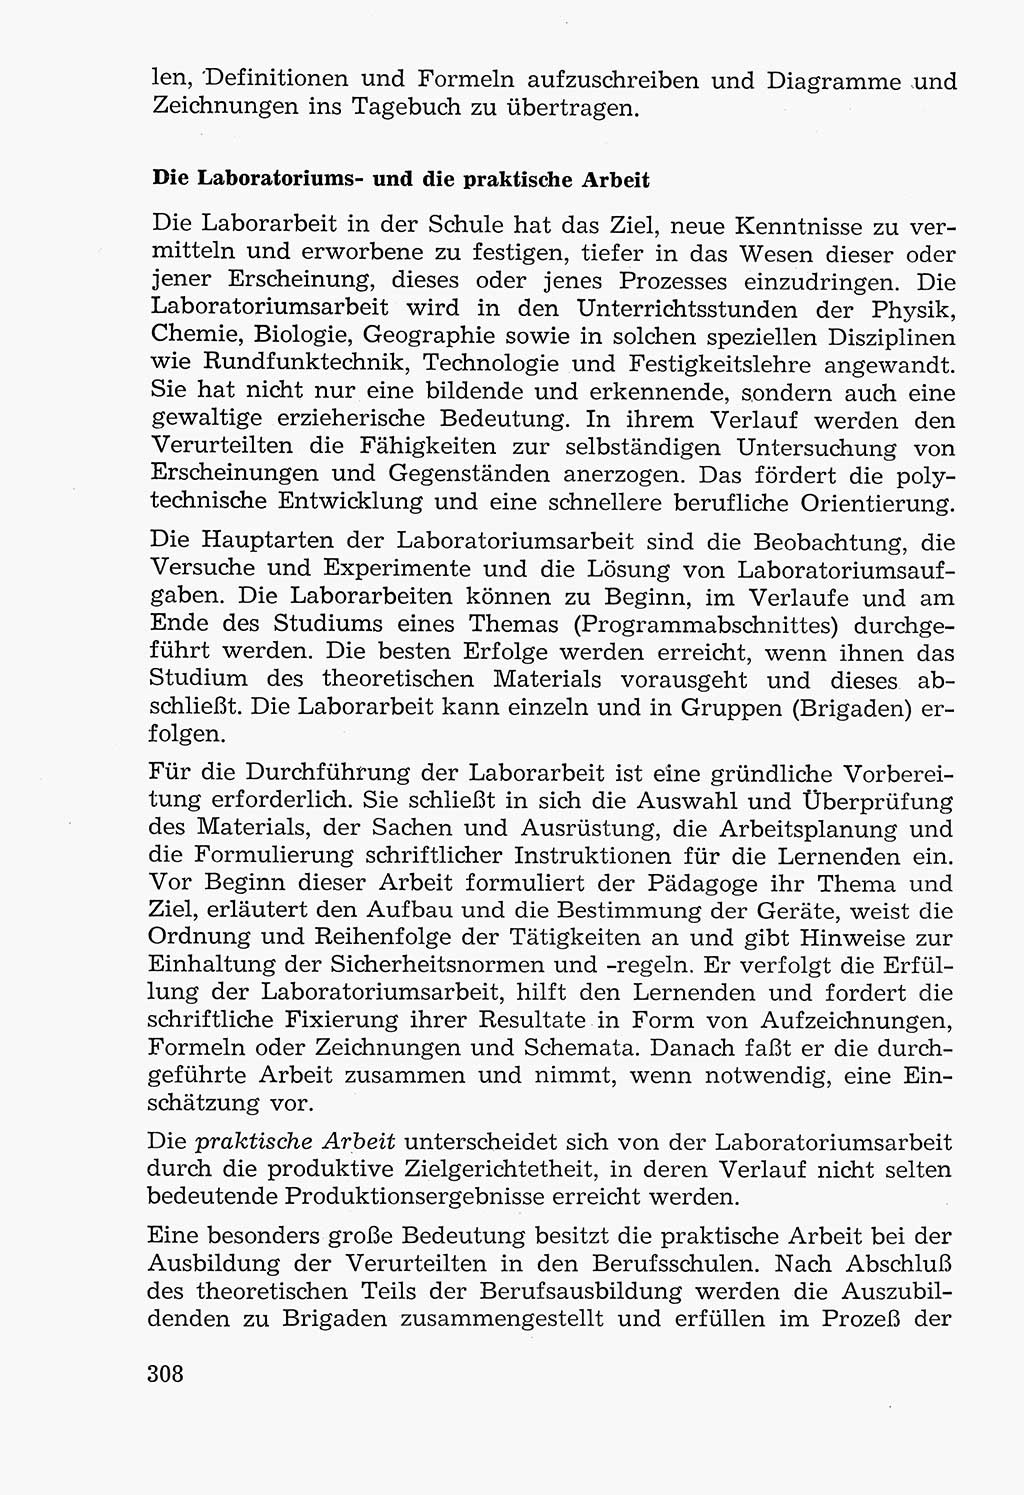 Lehrbuch der StrafvollzugspÃ¤dagogik [Deutsche Demokratische Republik (DDR)] 1969, Seite 308 (Lb. SV-Pd. DDR 1969, S. 308)